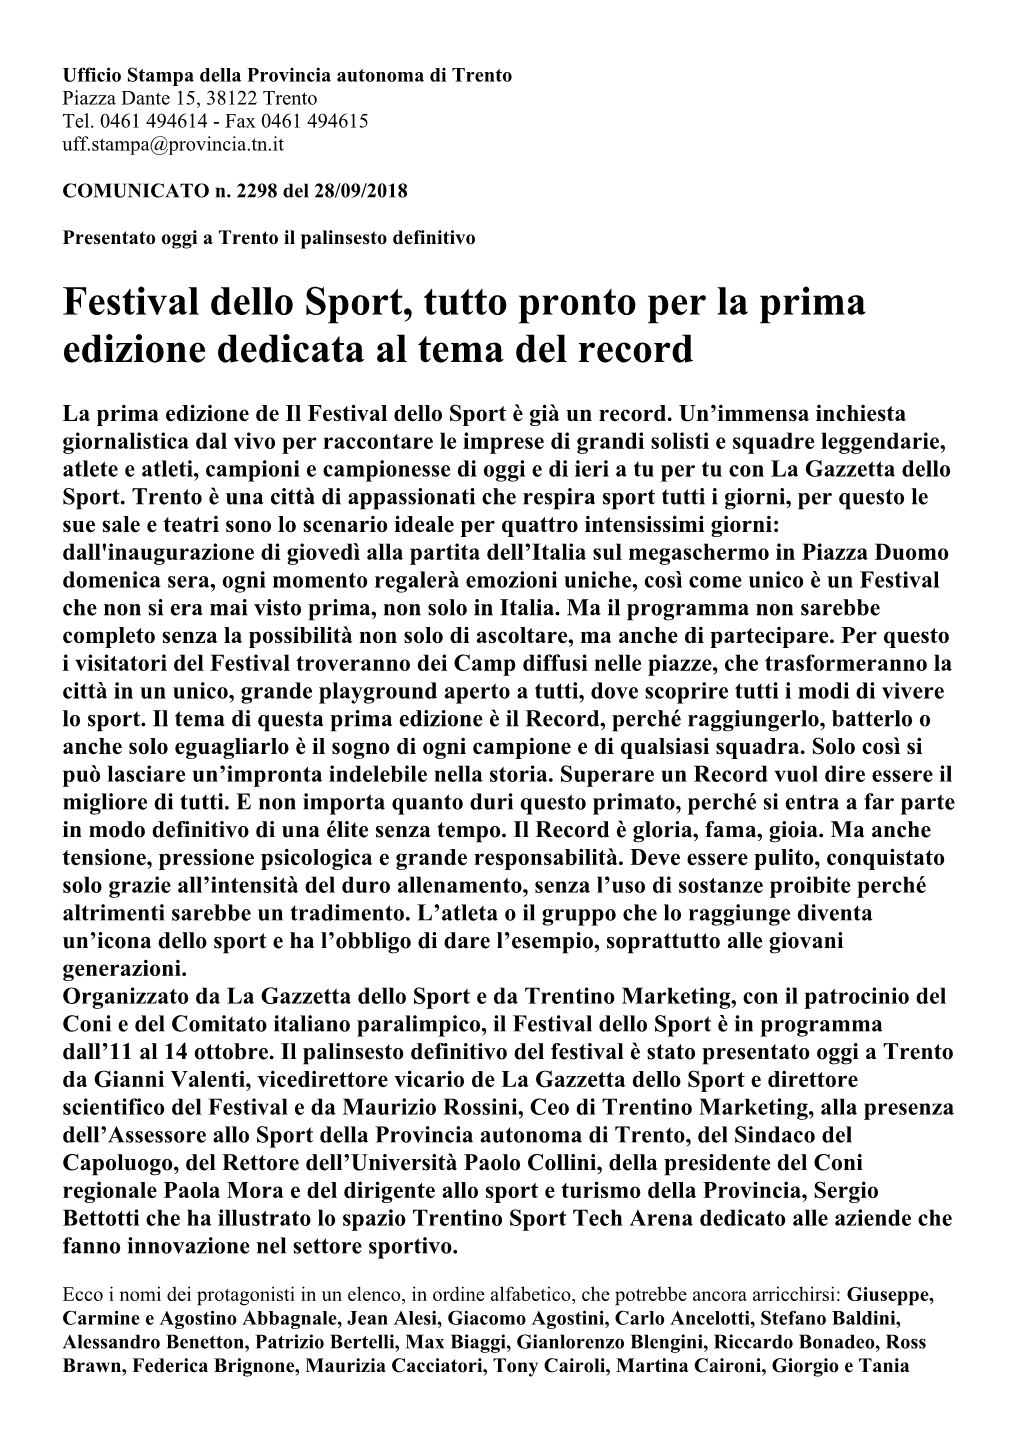 Festival Dello Sport, Tutto Pronto Per La Prima Edizione Dedicata Al Tema Del Record